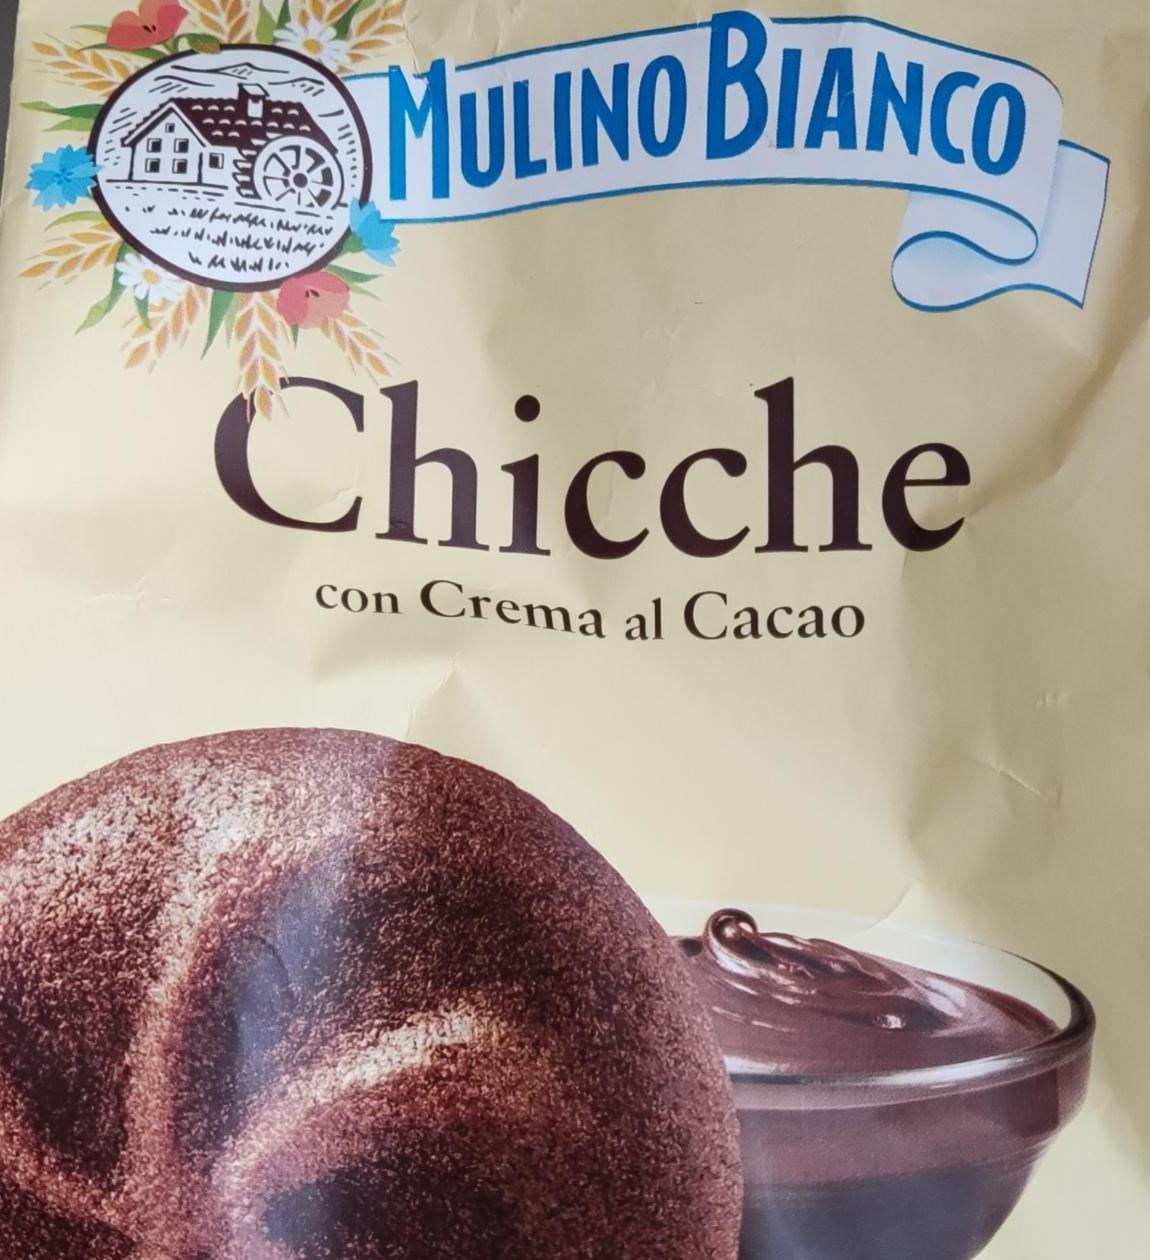 Фото - Biscotti Frollini Chicche con Crema al Cacao, Colazione Ricca di Gusto Mulino Bianco